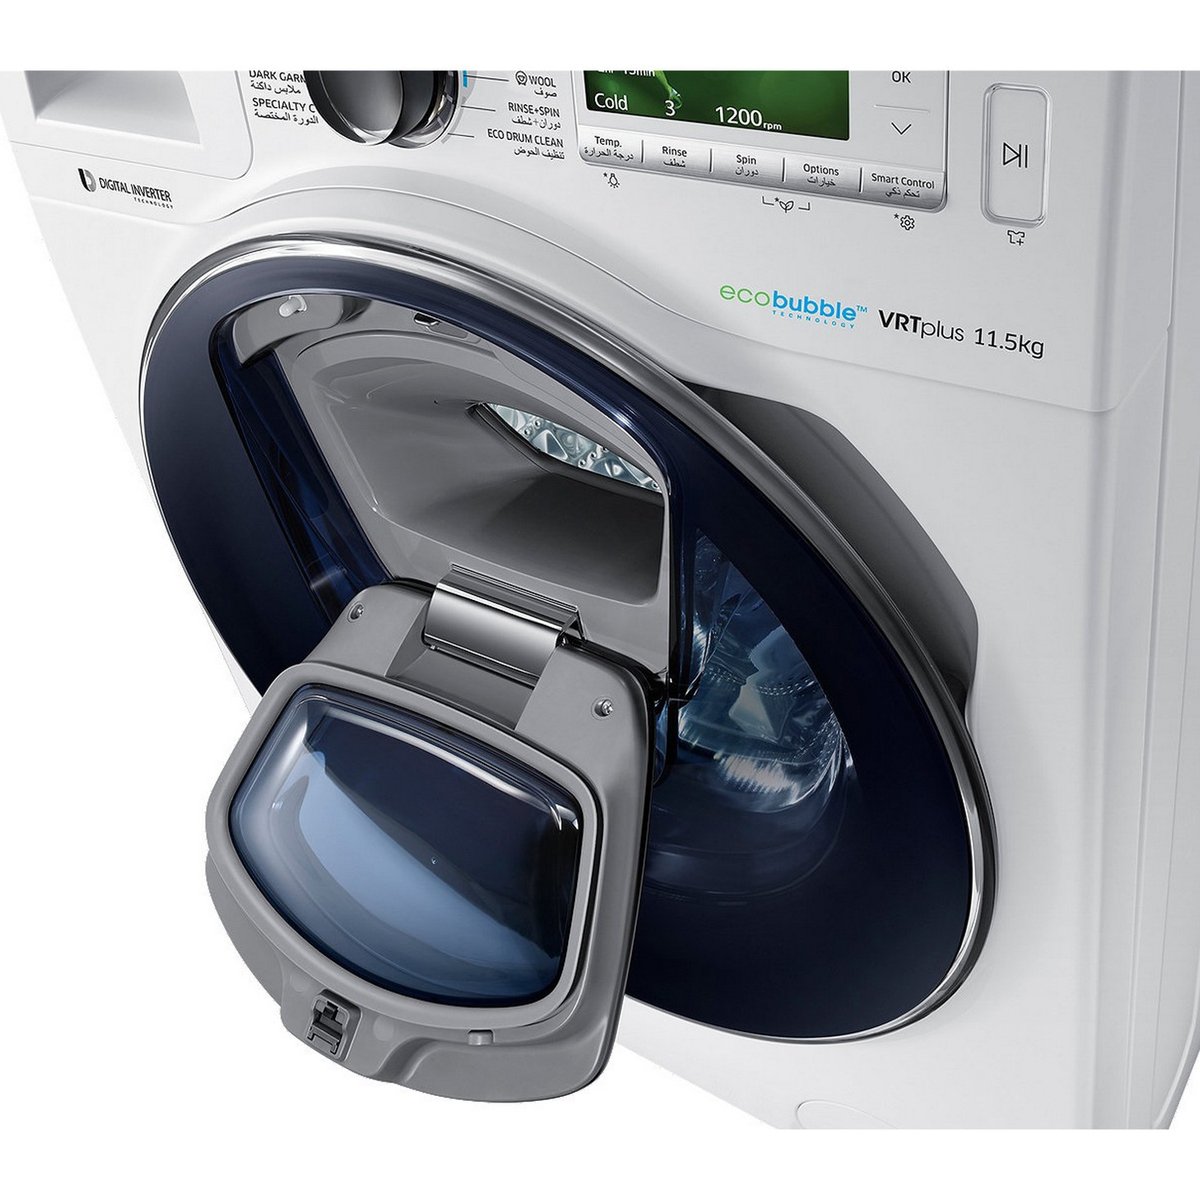 Samsung Front Load Washing Machine WW11K84120W 11.5Kg